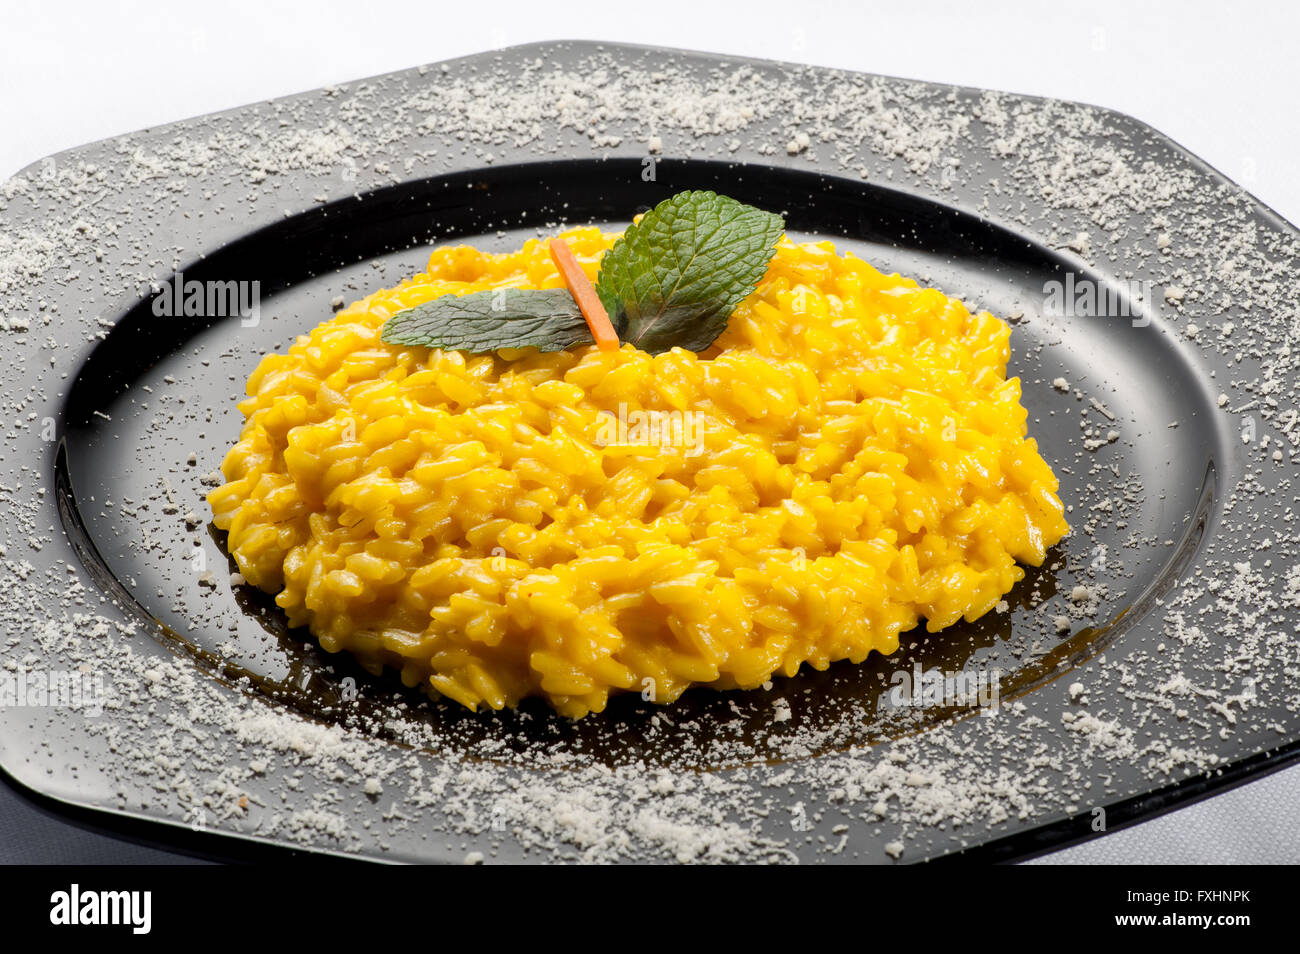 Sechseckigen schwarzen Gussplatte mit gelben Risotto Reis und Karotten Minze garnieren an der Spitze Stockfoto